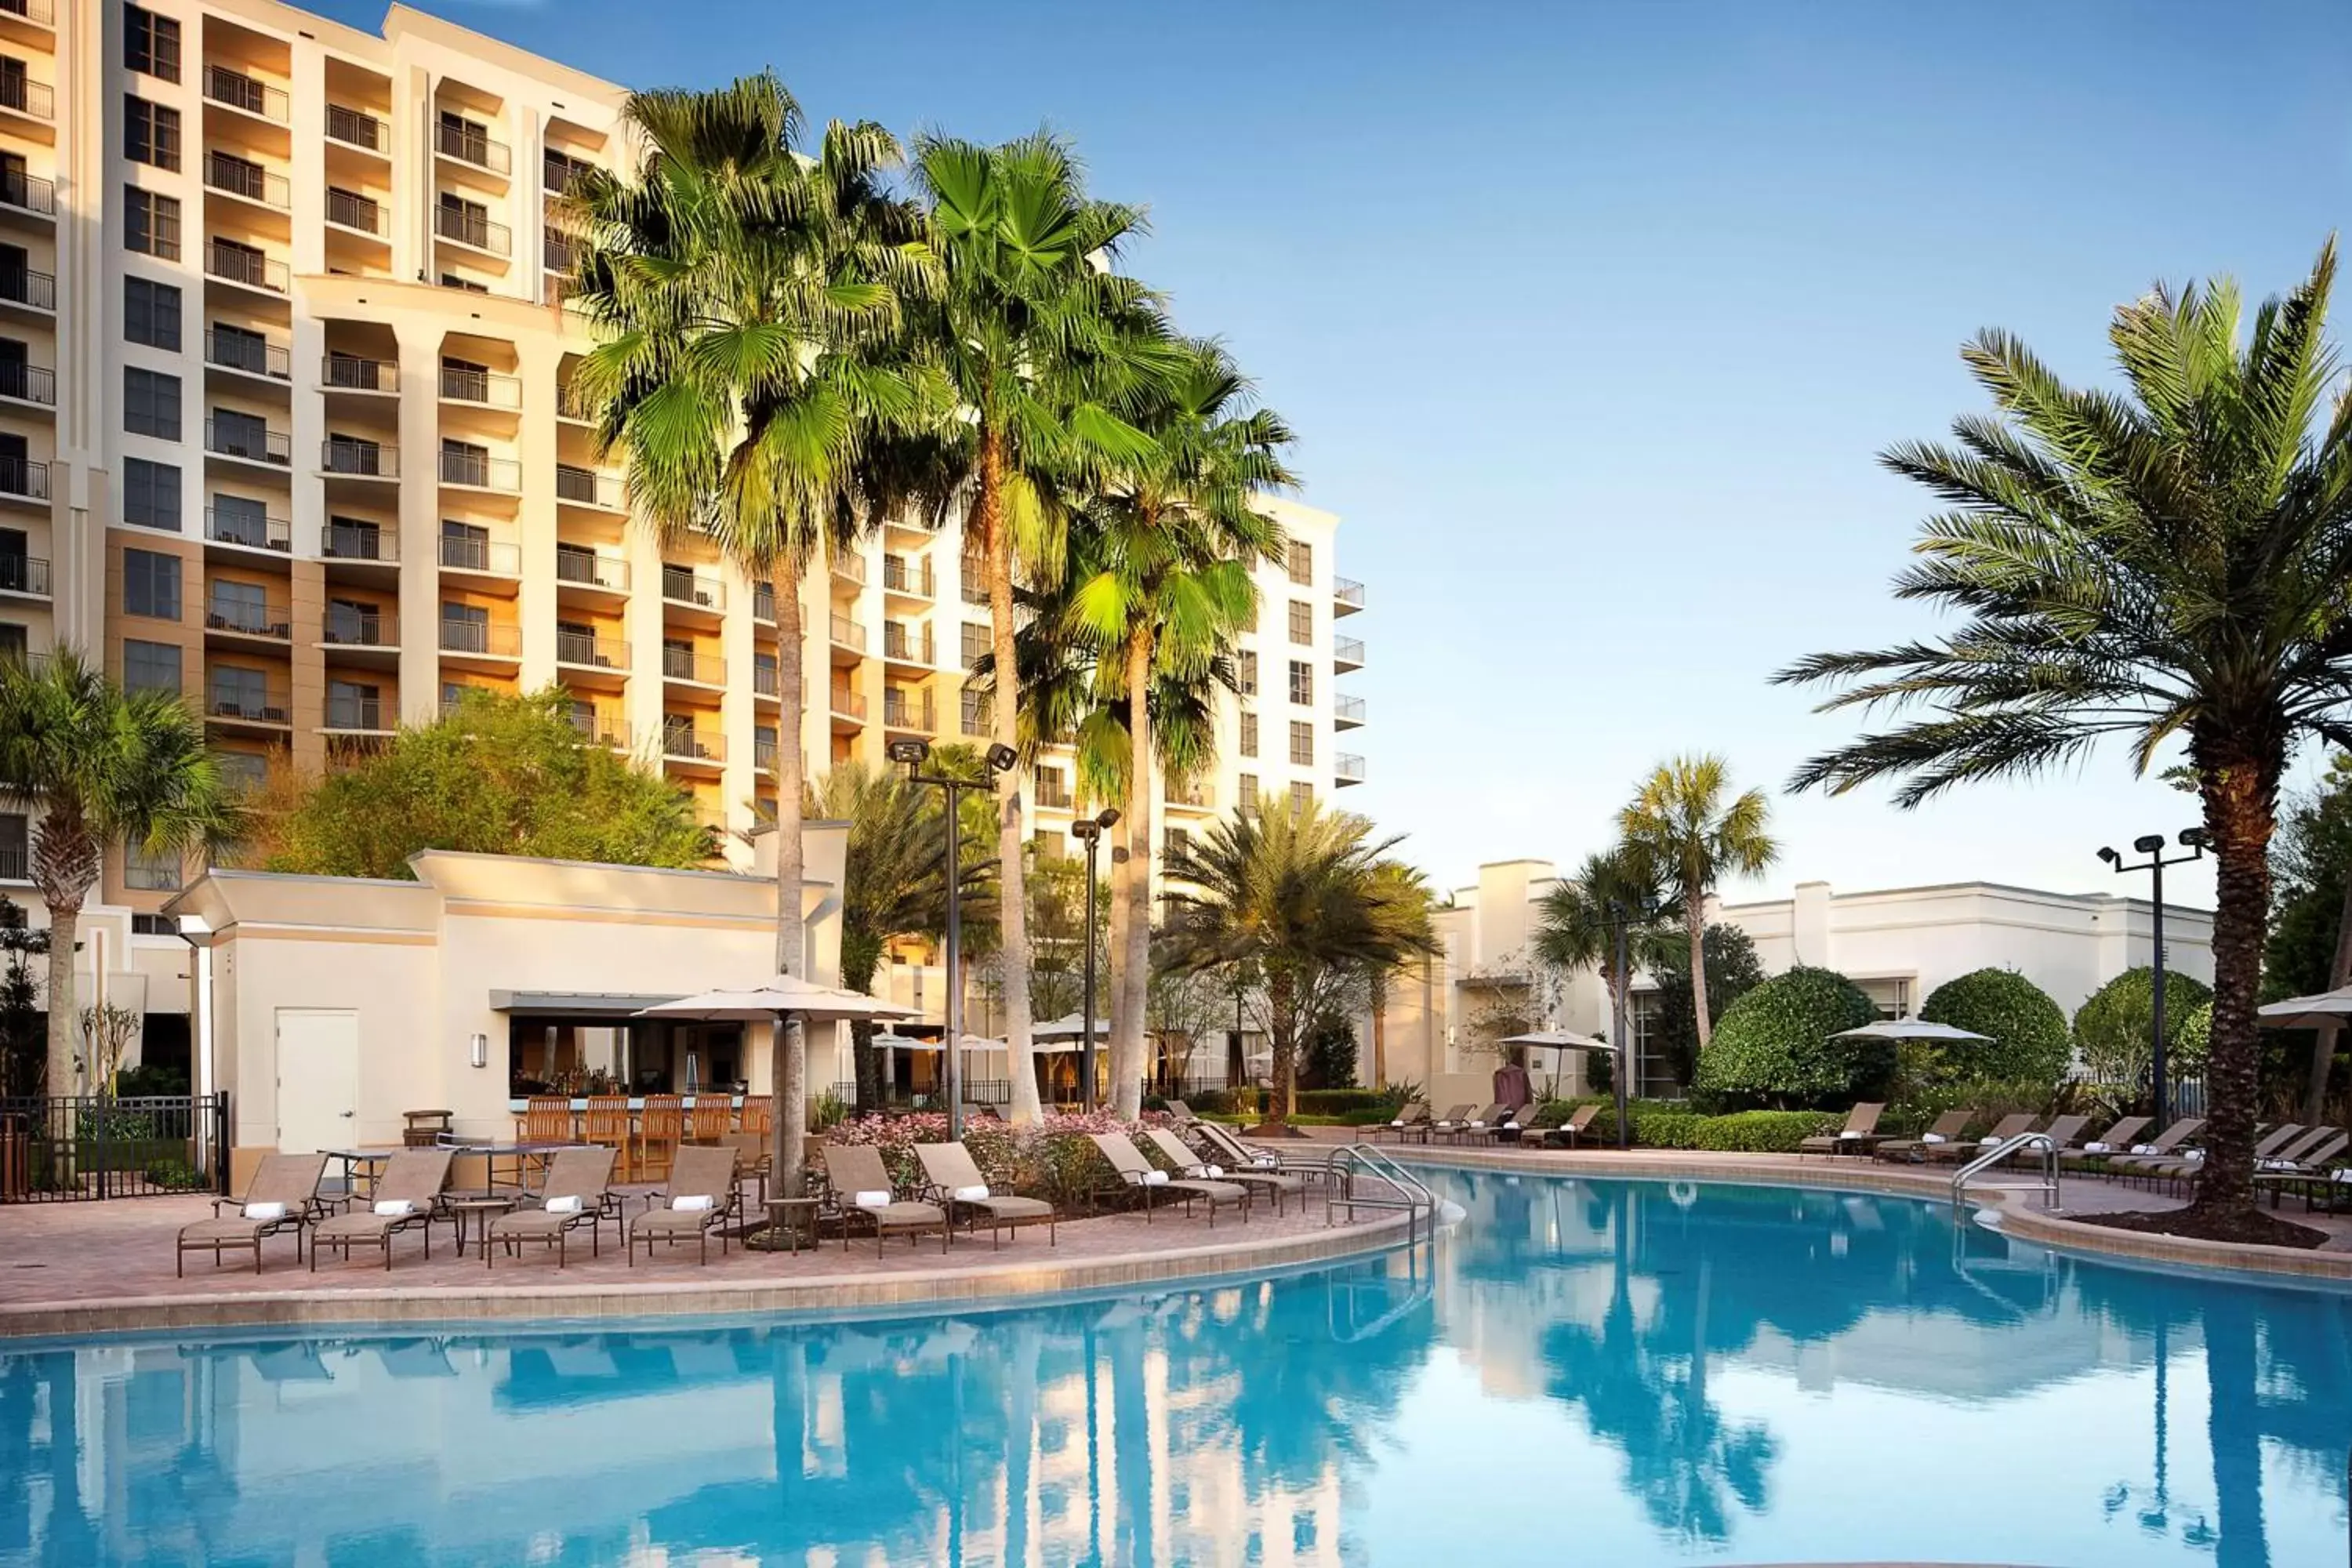 Pool view, Swimming Pool in Hilton Grand Vacations Club Las Palmeras Orlando